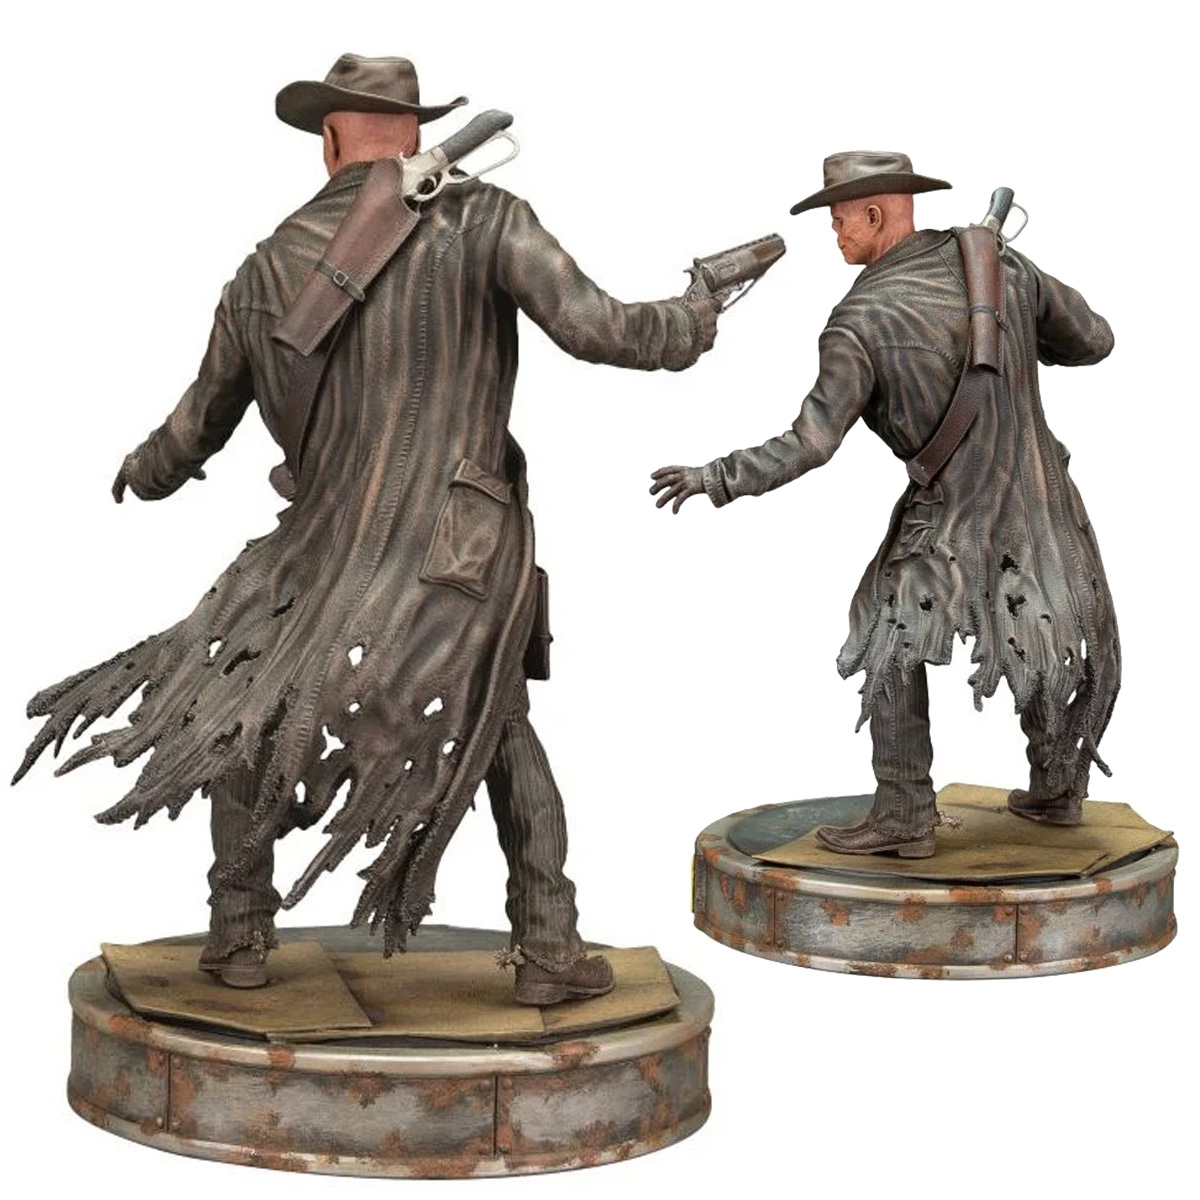 Estátuas da Série Fallout Amazon Prime